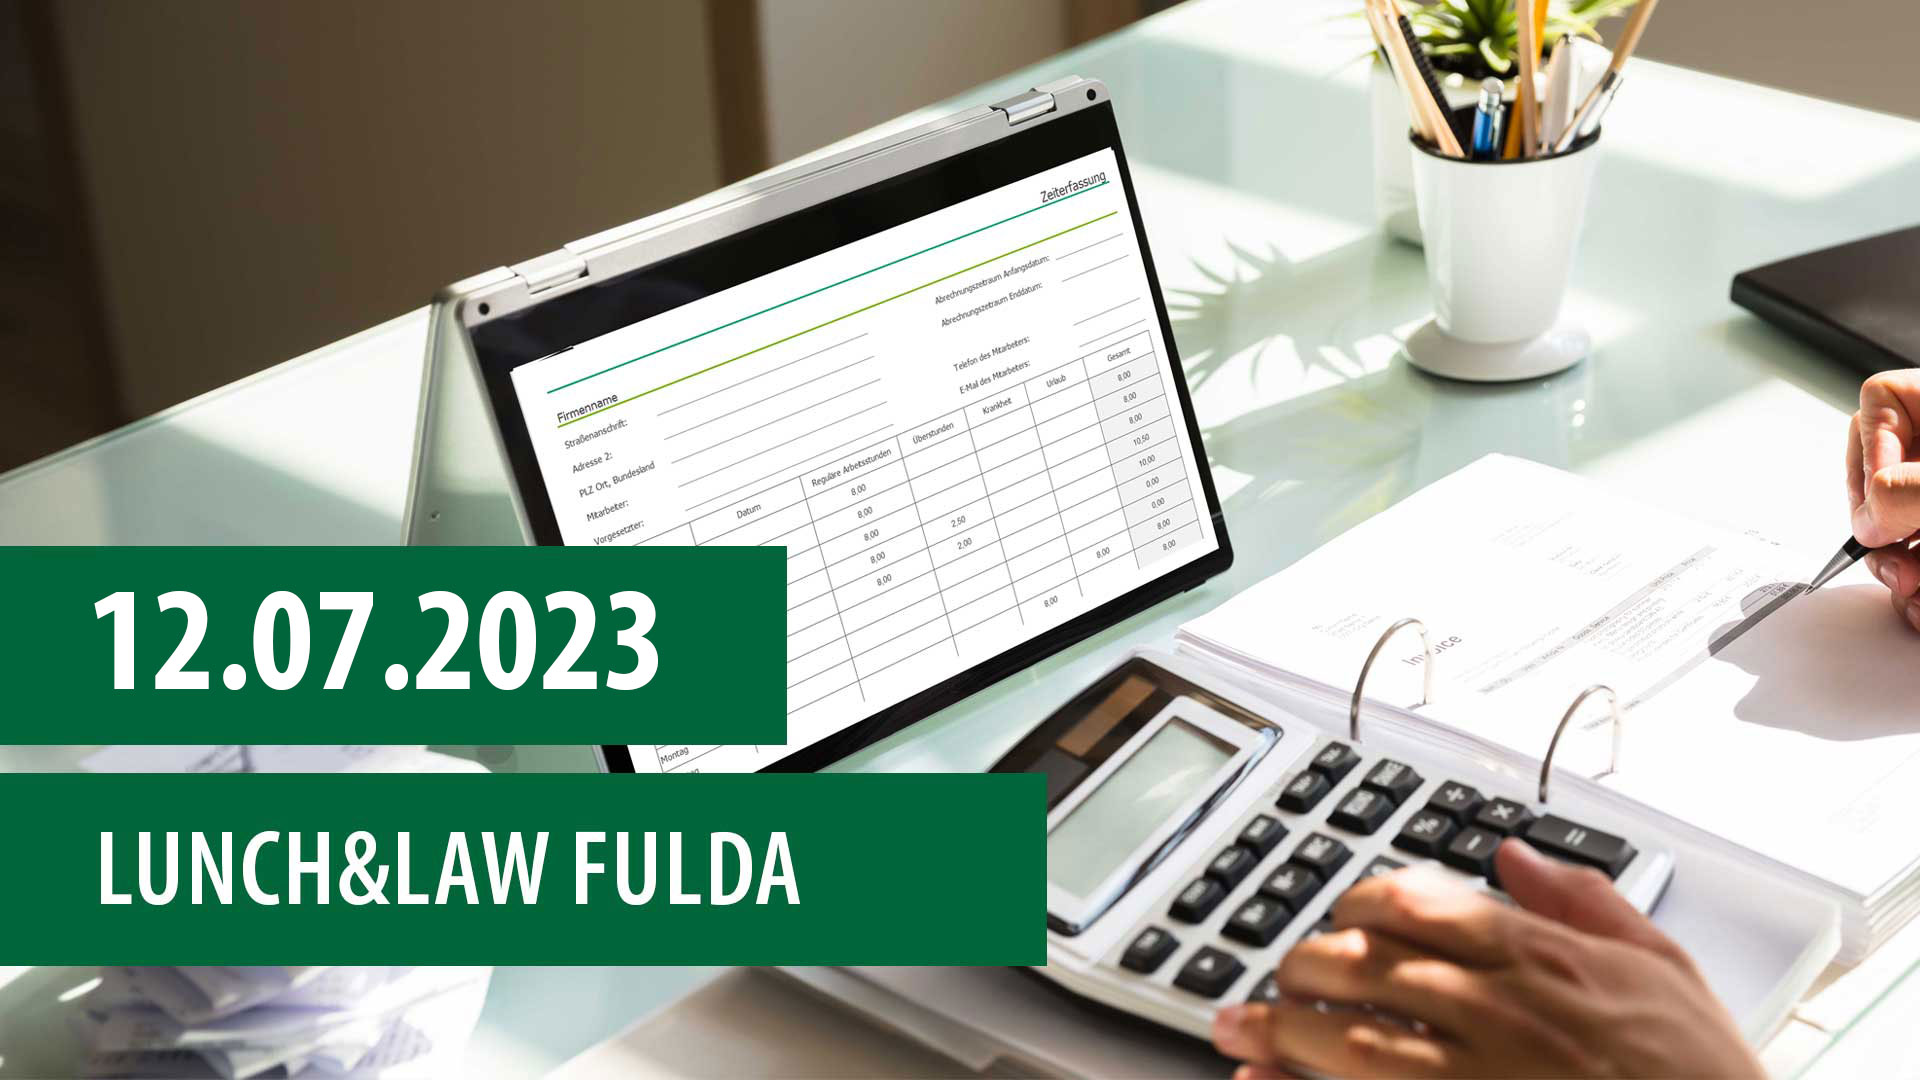 Lunch&Law Fulda 12.07.2023